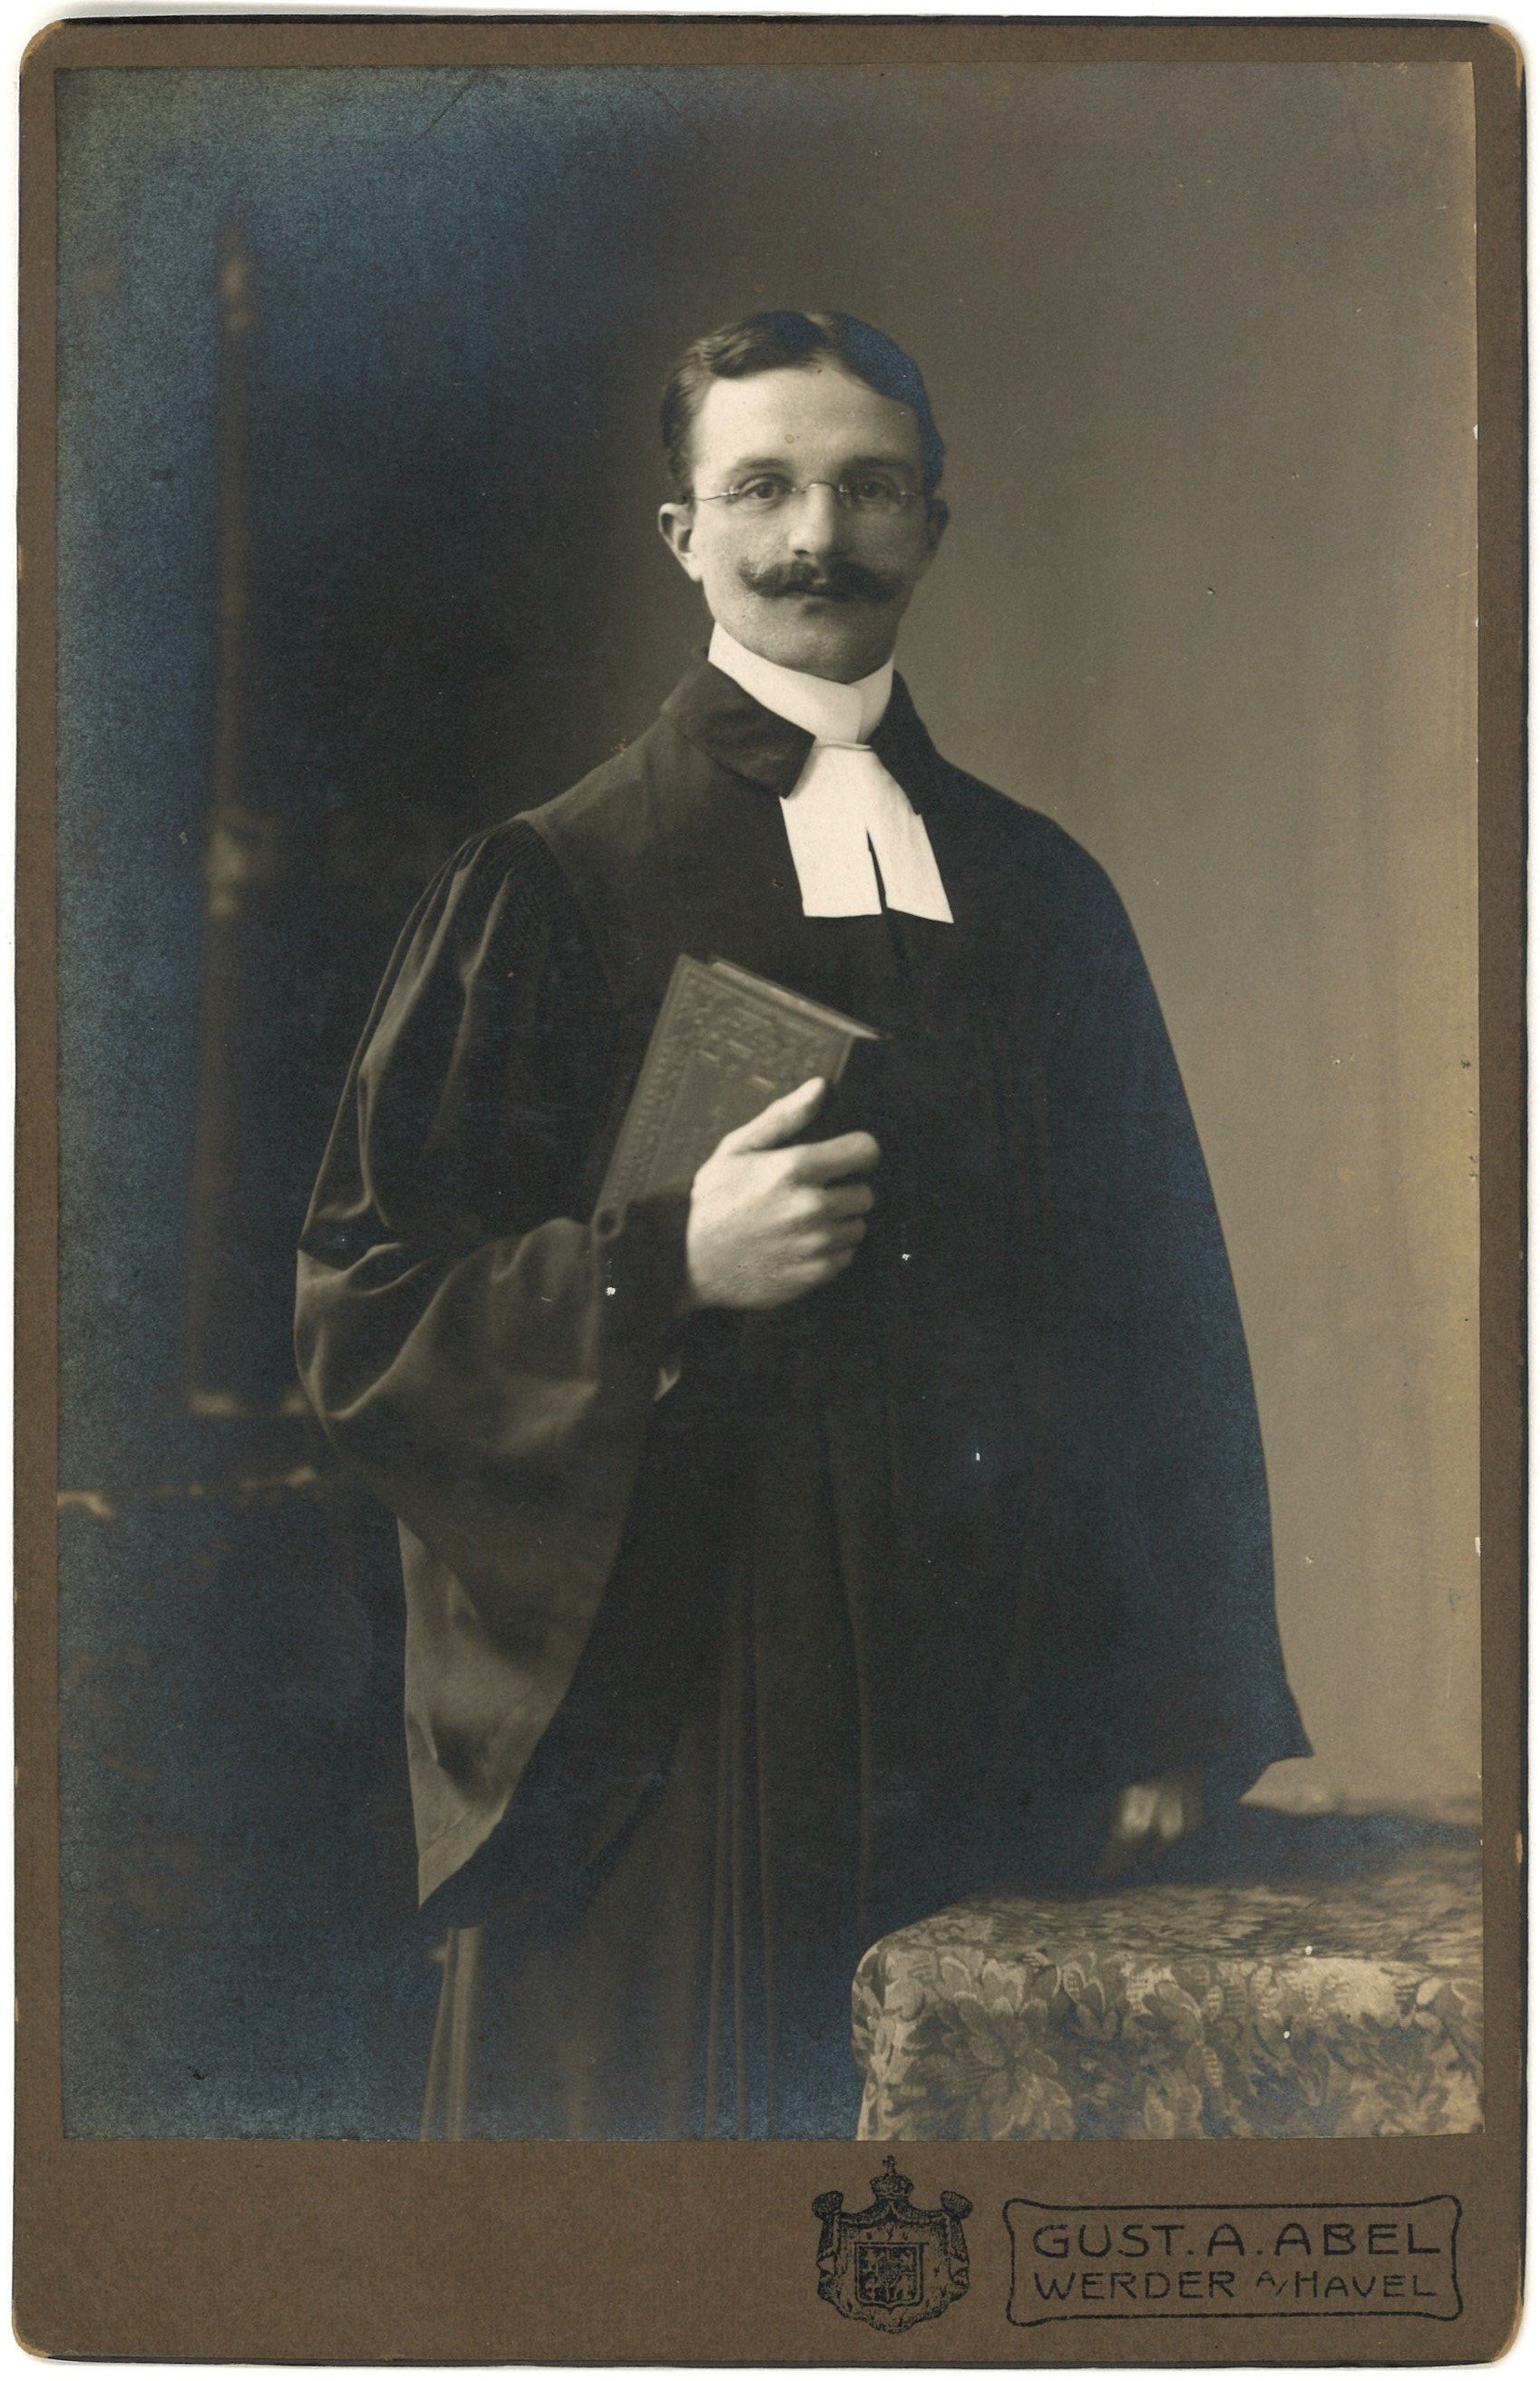 Fischer, Otto (1883-1916), Diakon in Werder/Havel (Landesgeschichtliche Vereinigung für die Mark Brandenburg e.V., Archiv CC BY)